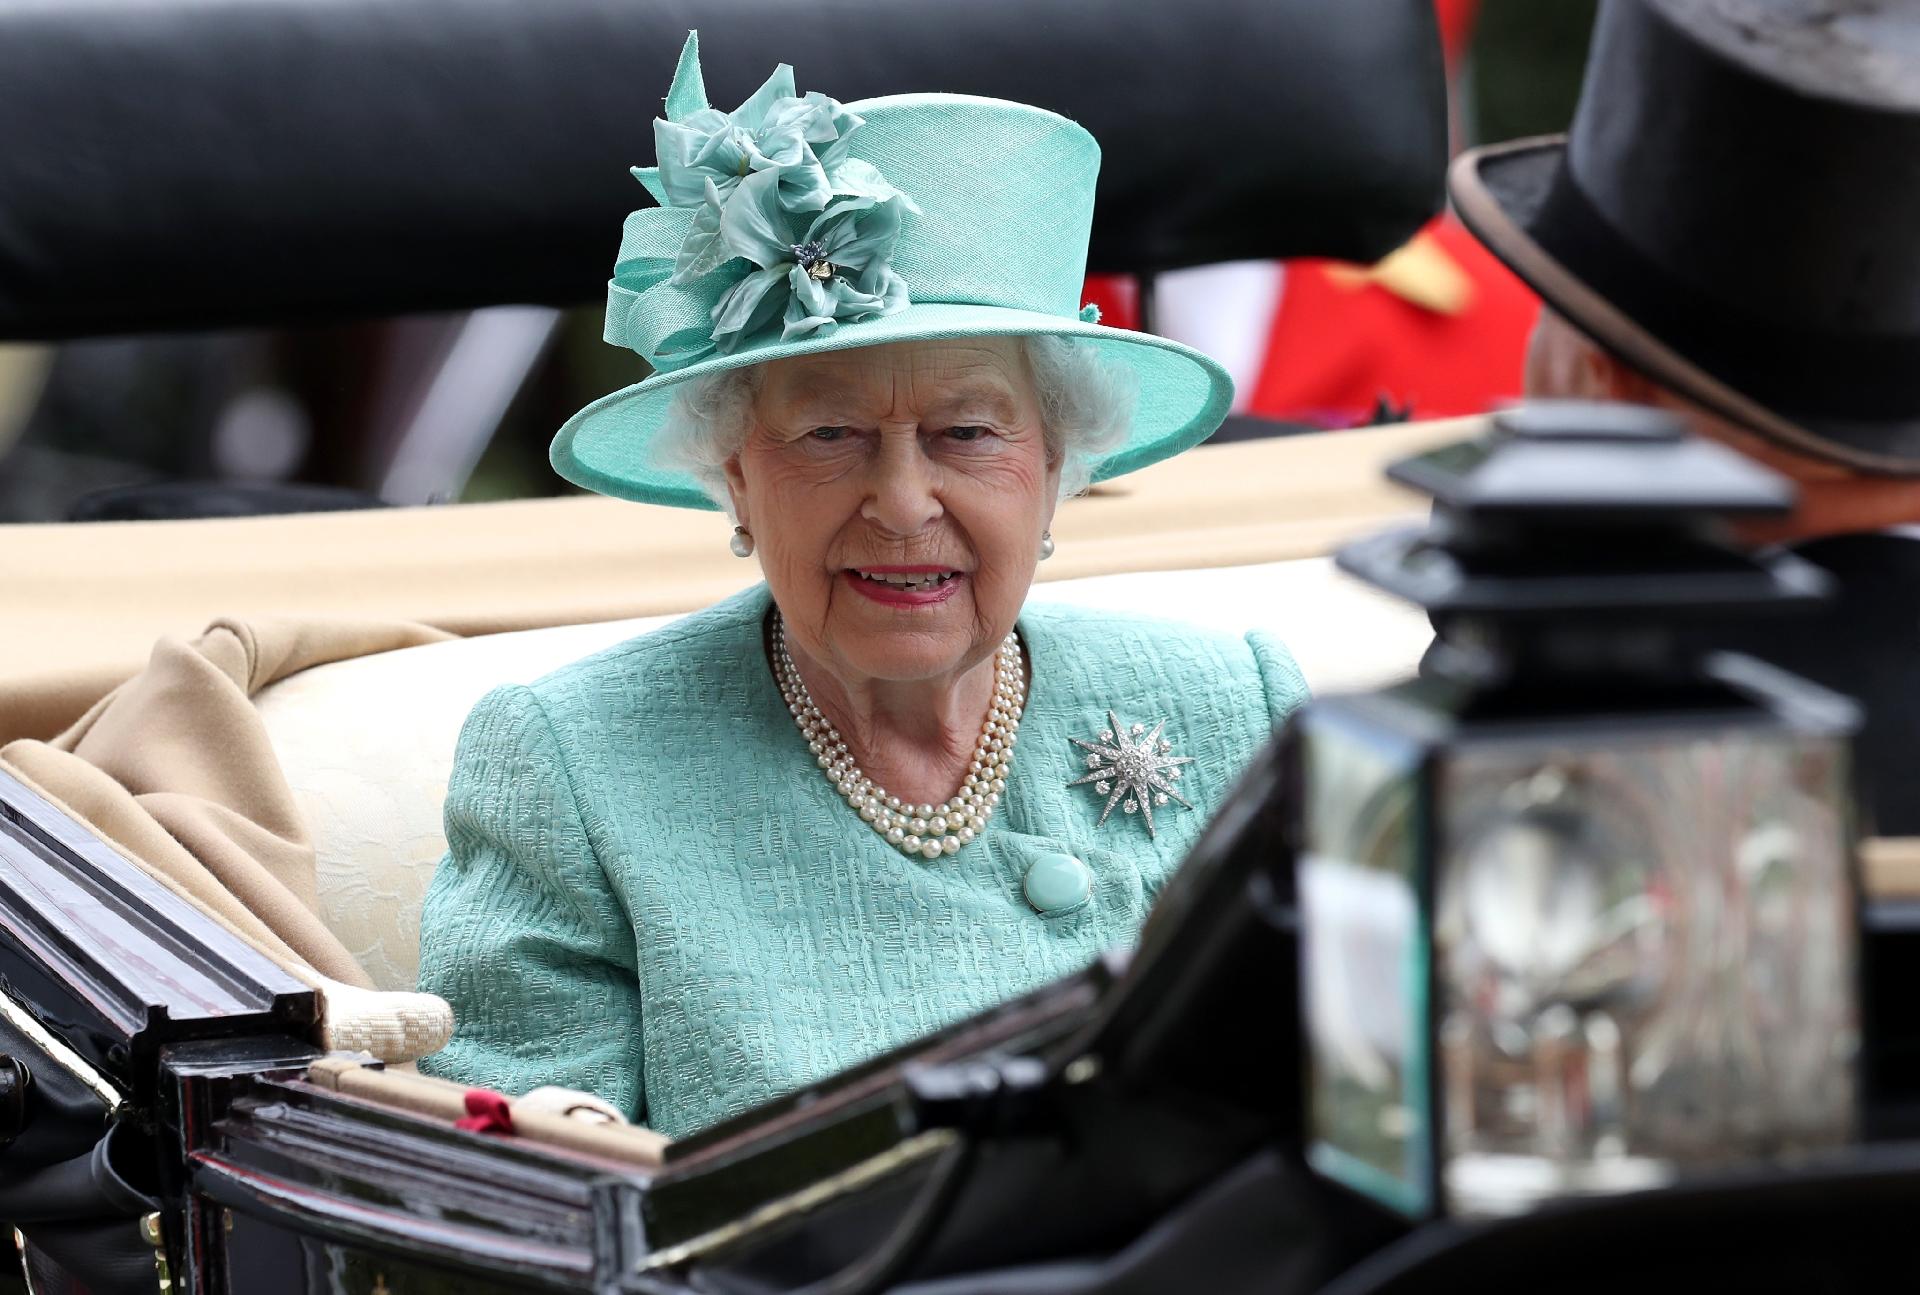 Queen Elizabeth II in public appearance in 2017. - Getty Images